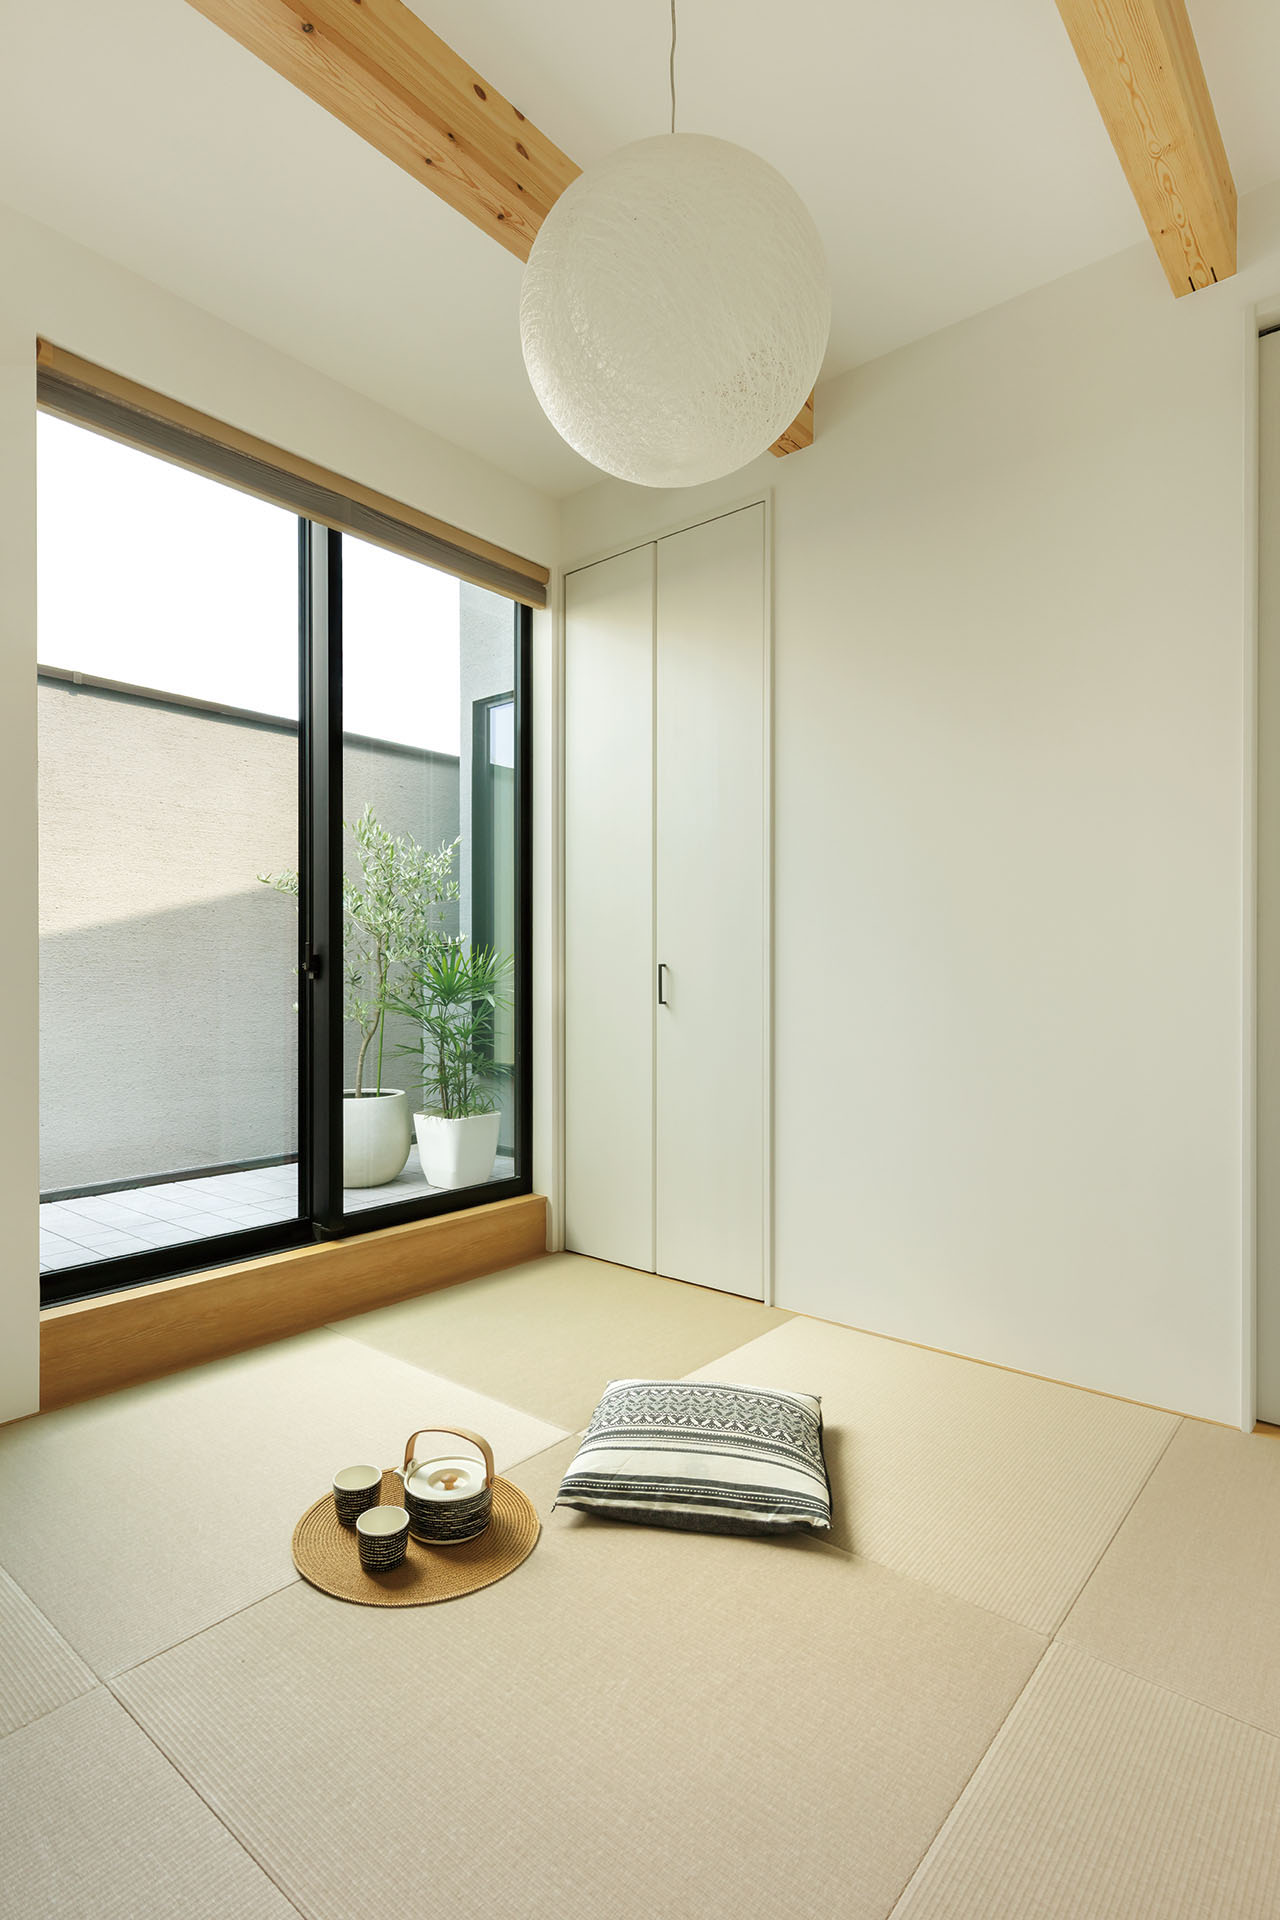 シンプルなデザインの和室